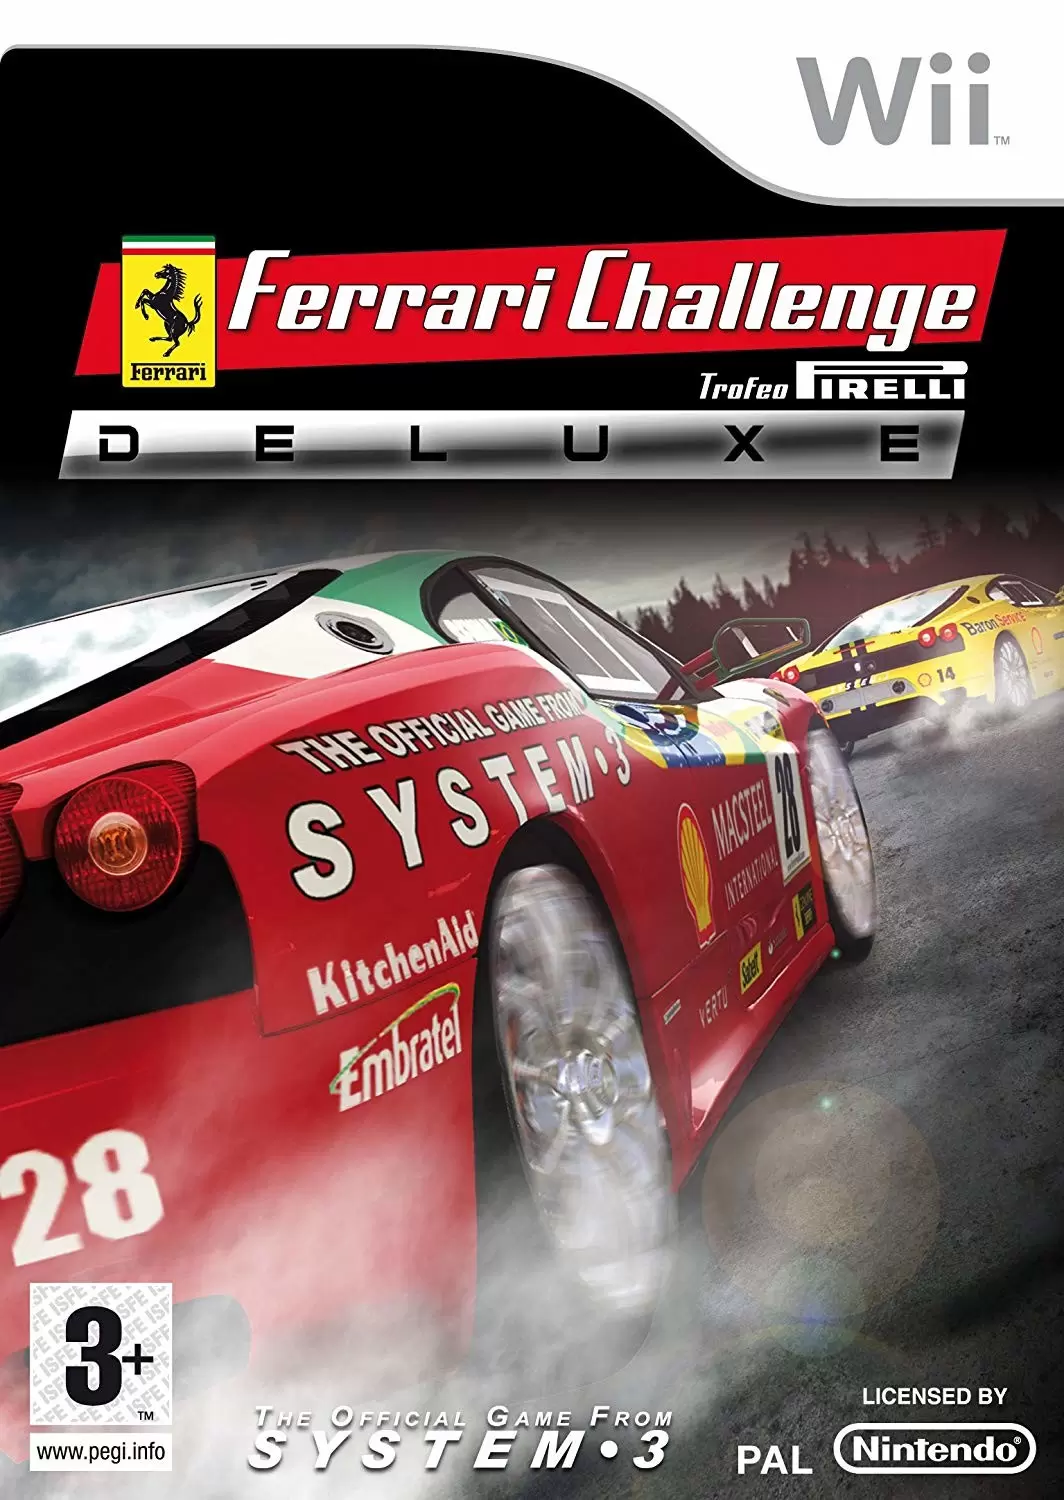 Nintendo Wii Games - Ferrari Challenge, Deluxe